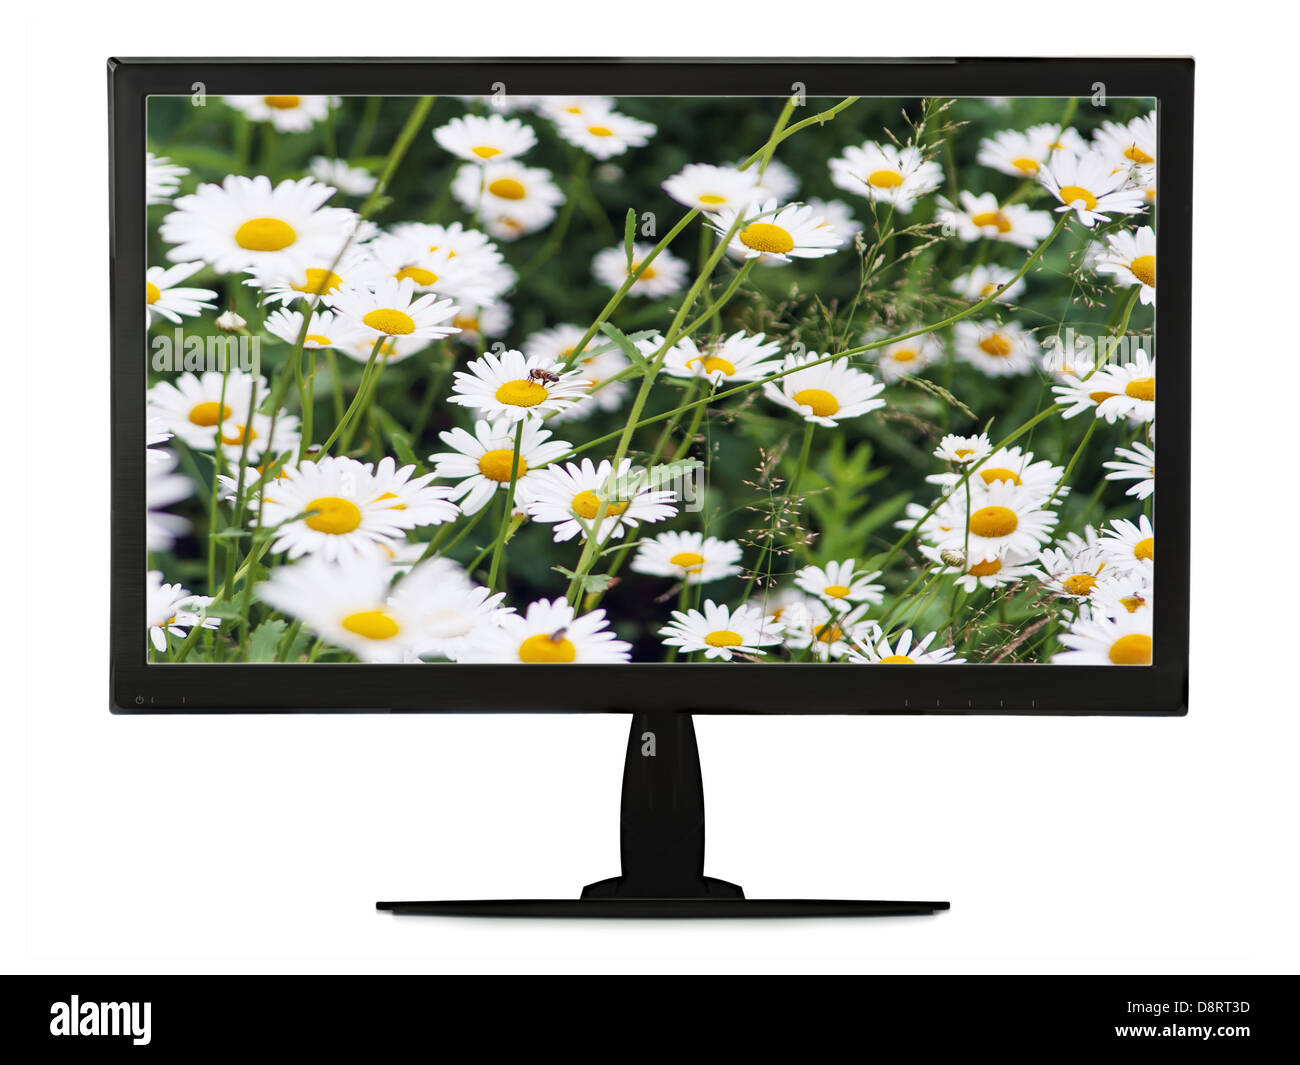 Moniteur LCD noir avec prairie floraison isolé sur fond blanc. Libre. Banque D'Images